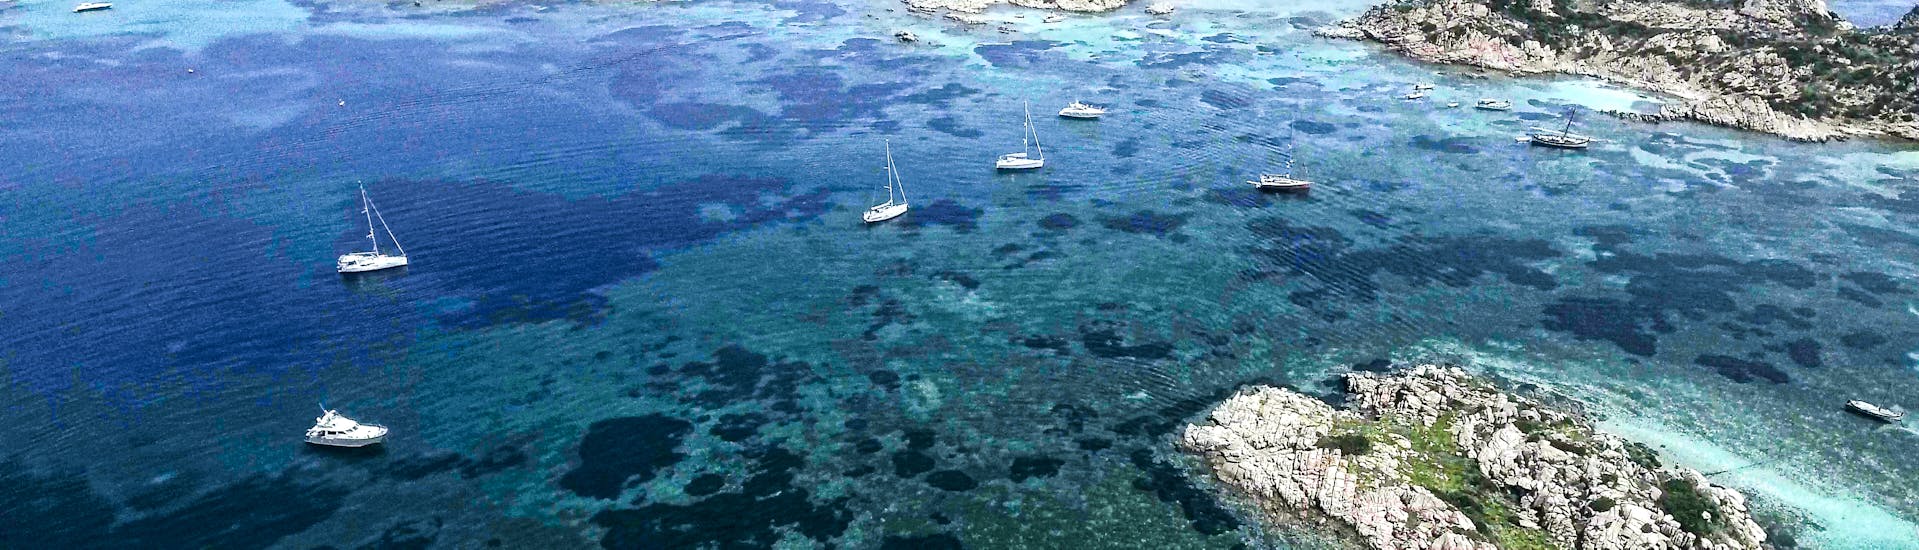 Les îles de l'archipel de la Maddalena que vous pouvez visiter lors de la Balade privée en bateau au nord de la Sardaigne ou en Corse avec Maggior leggero Tour La Maddalena.